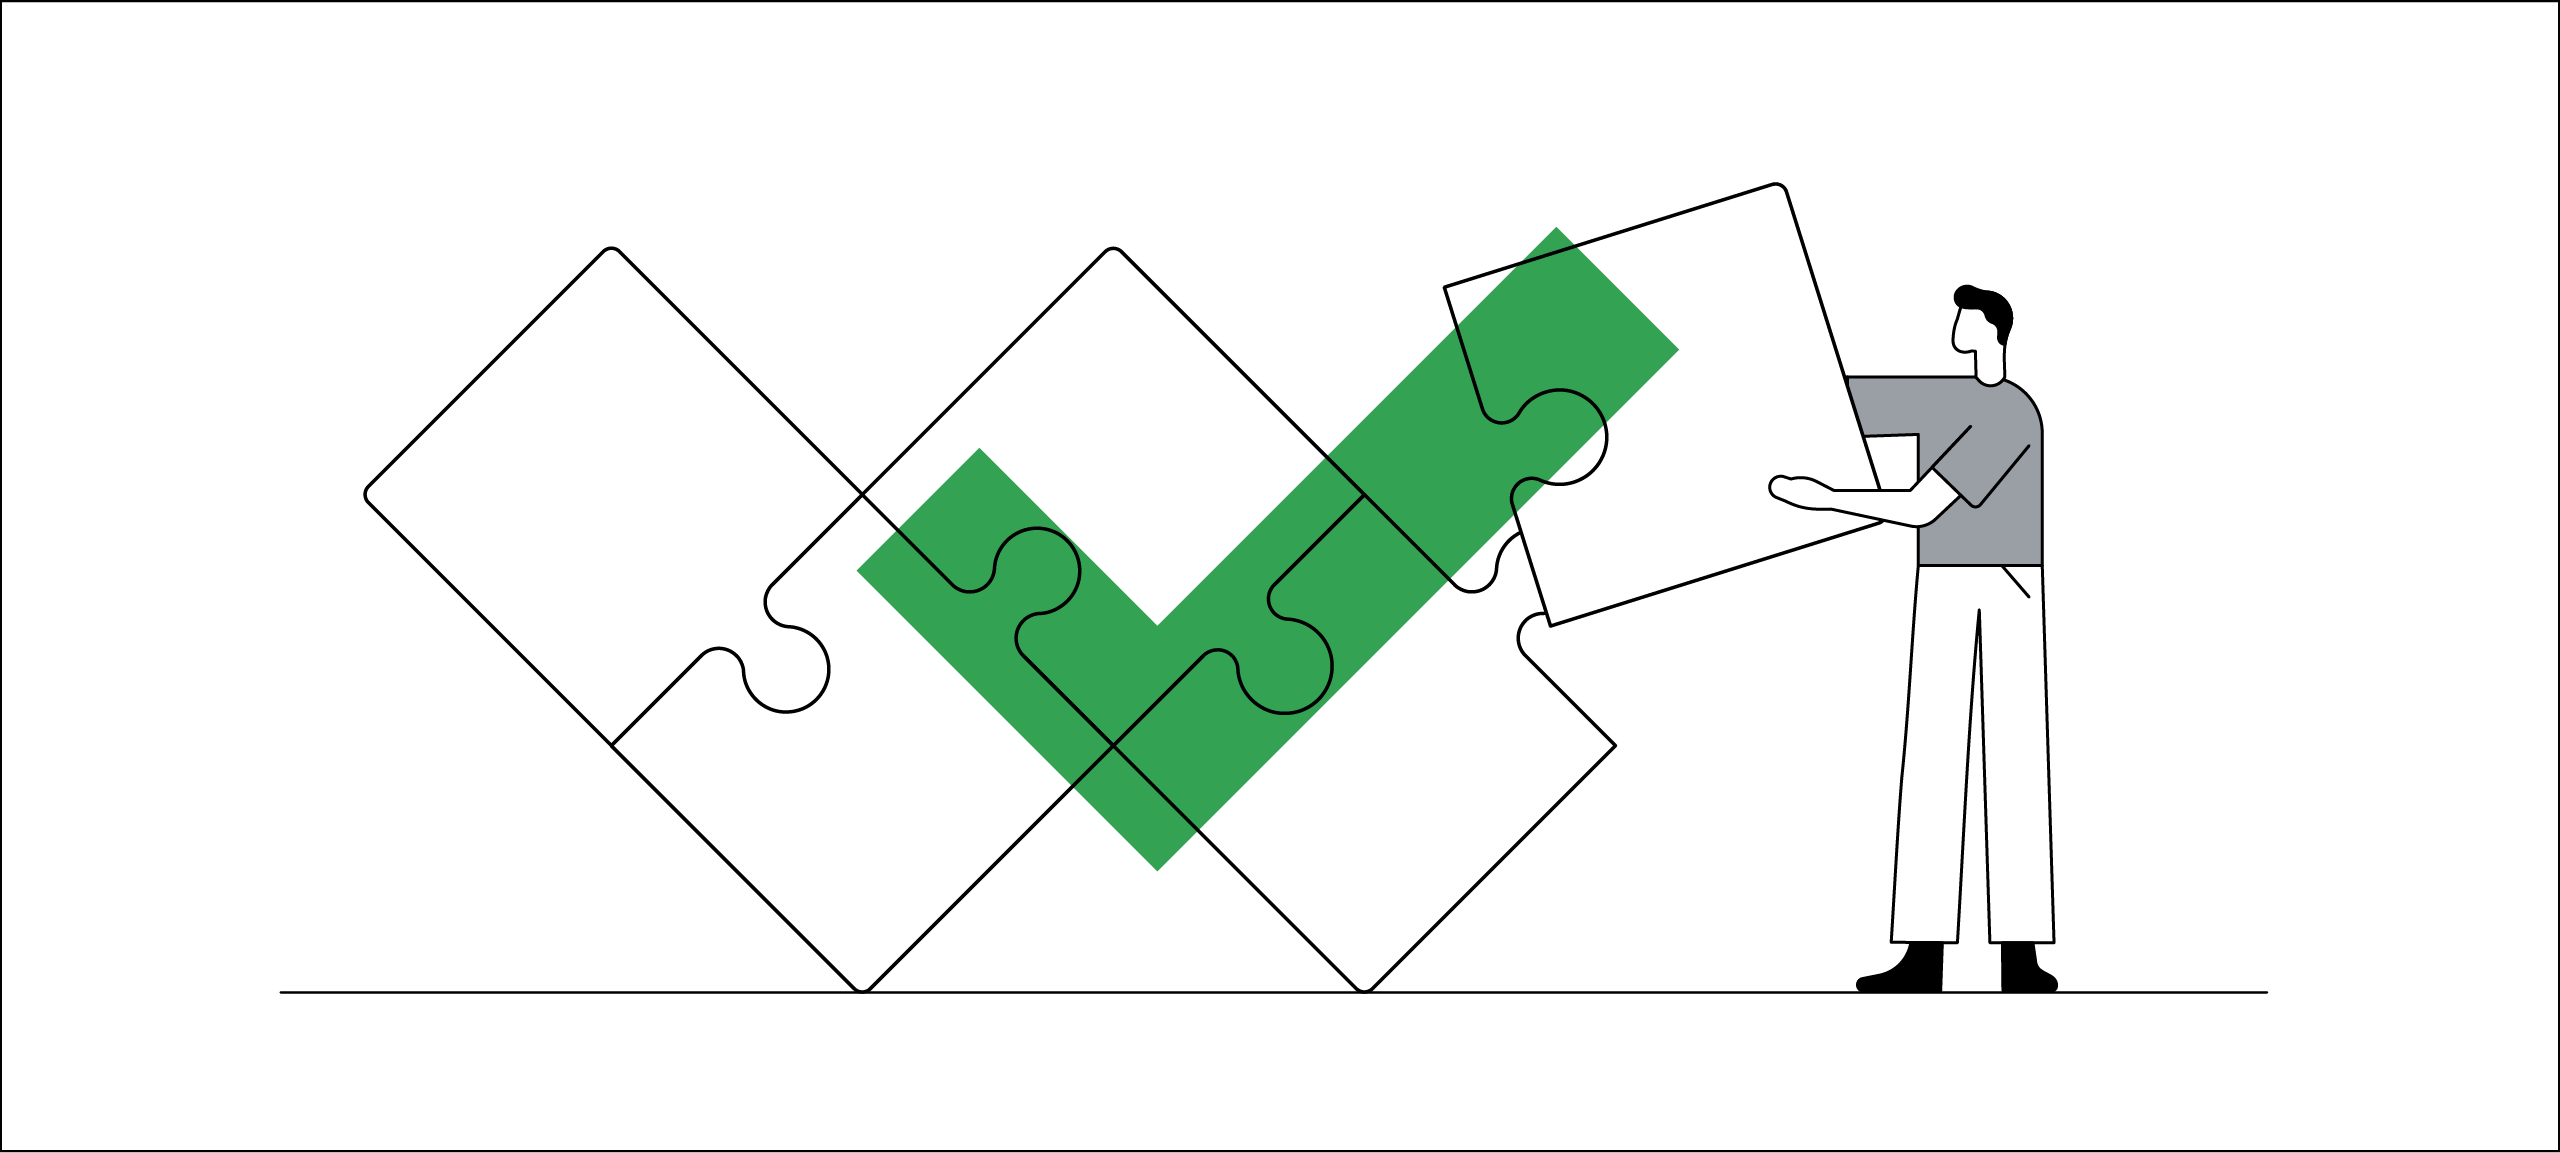 Dibujo lineal que ilustra la resolución de problemas. Un hombre de pelo negro añade la última pieza a un puzle de tamaño real en forma de W. Encima aparece una marca de verificación de color verde para indicar que se ha completado.